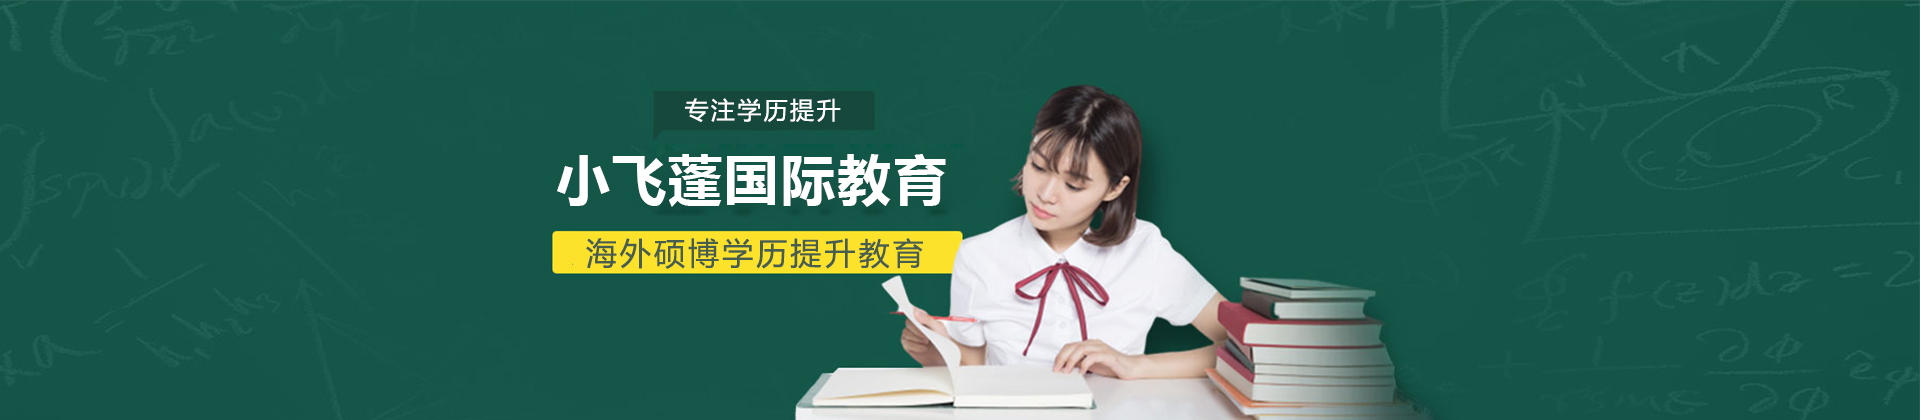 南宁小飞蓬国际教育